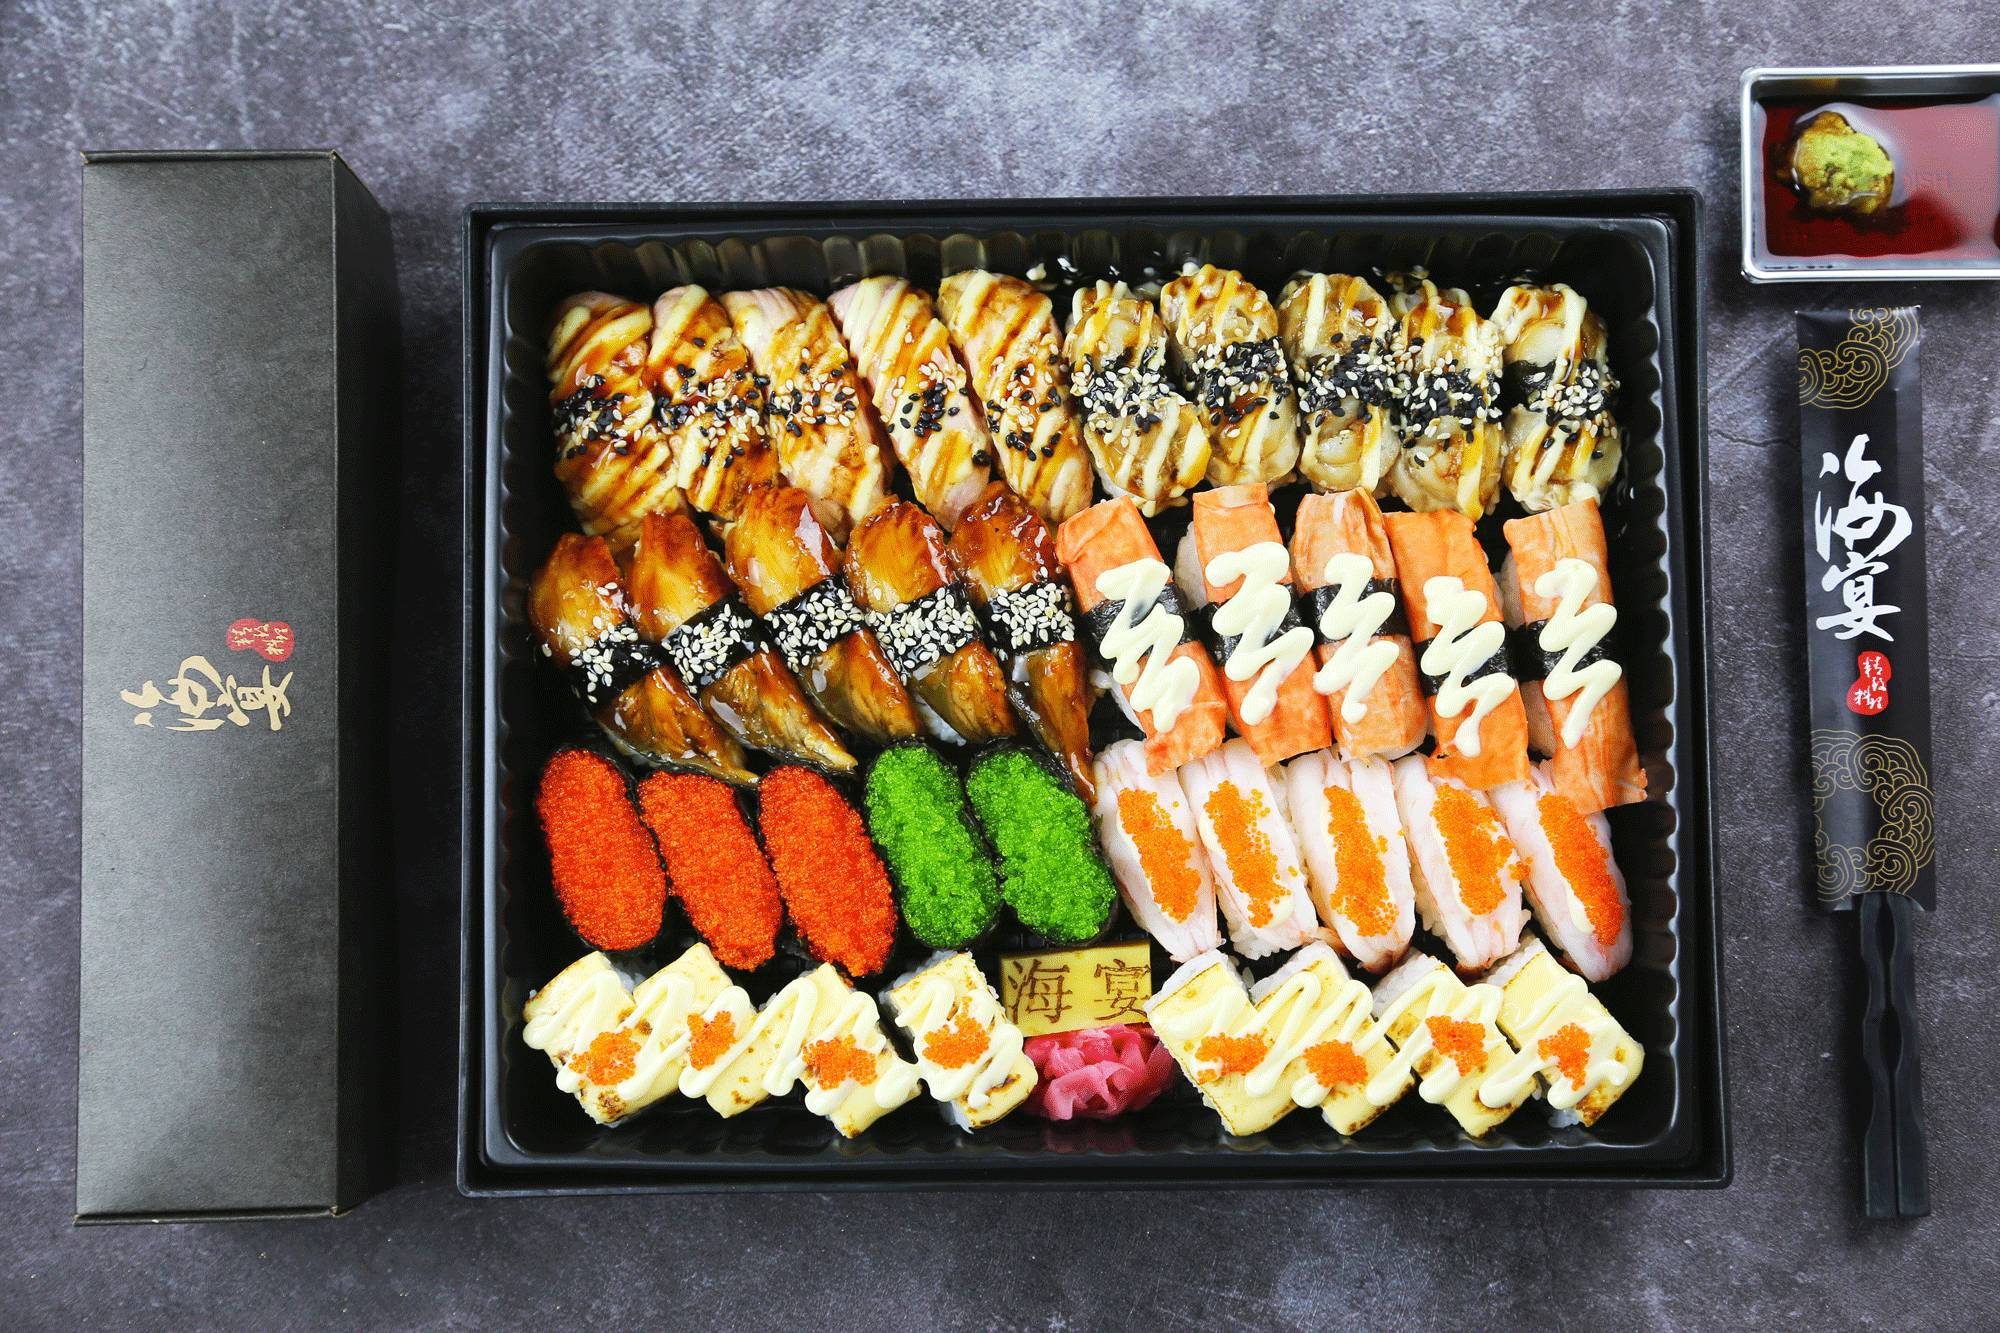 美食 正文 颜值担当的寿司拼盘都能满足 只为了顶级吃货们的极致体验